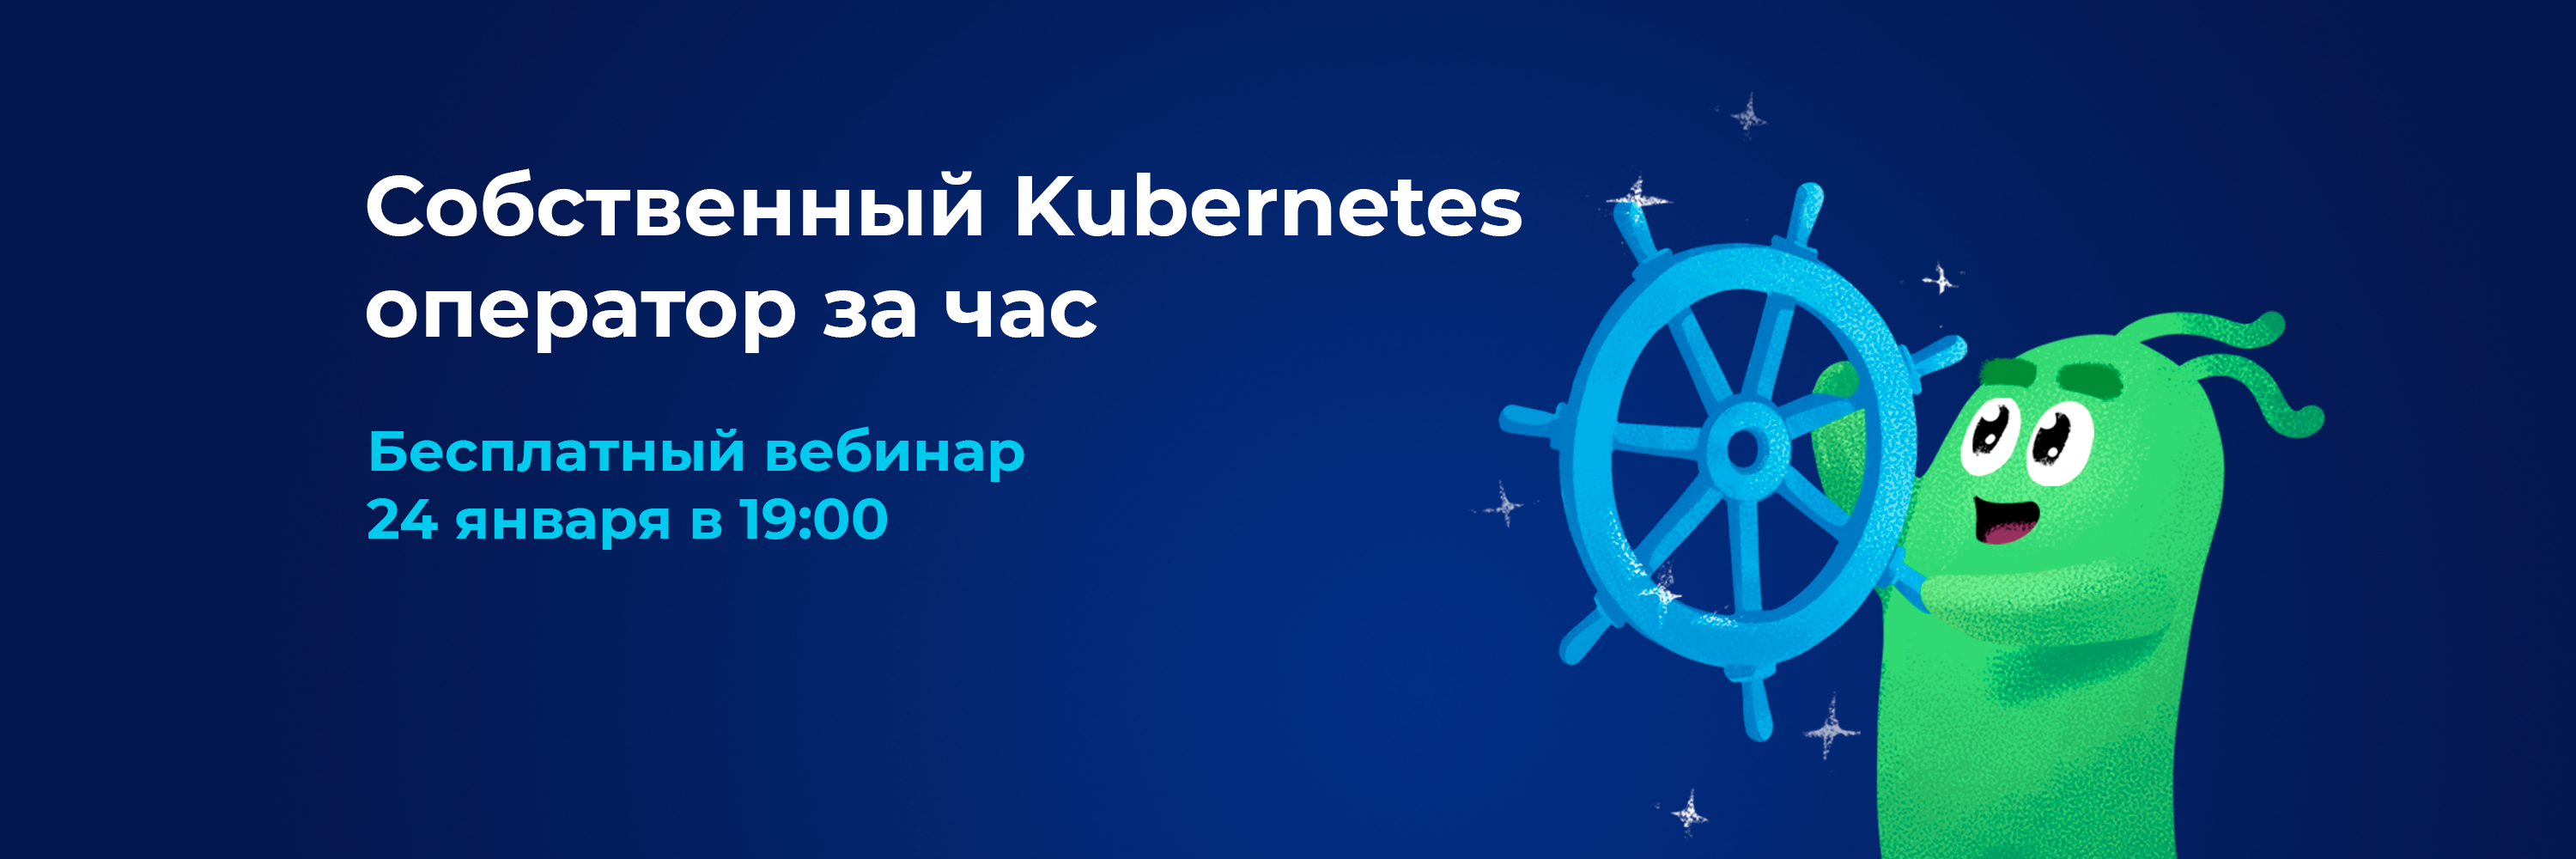 Бесплатный вебинар «Собственный Kubernetes оператор за час», уже сегодня в 19:00